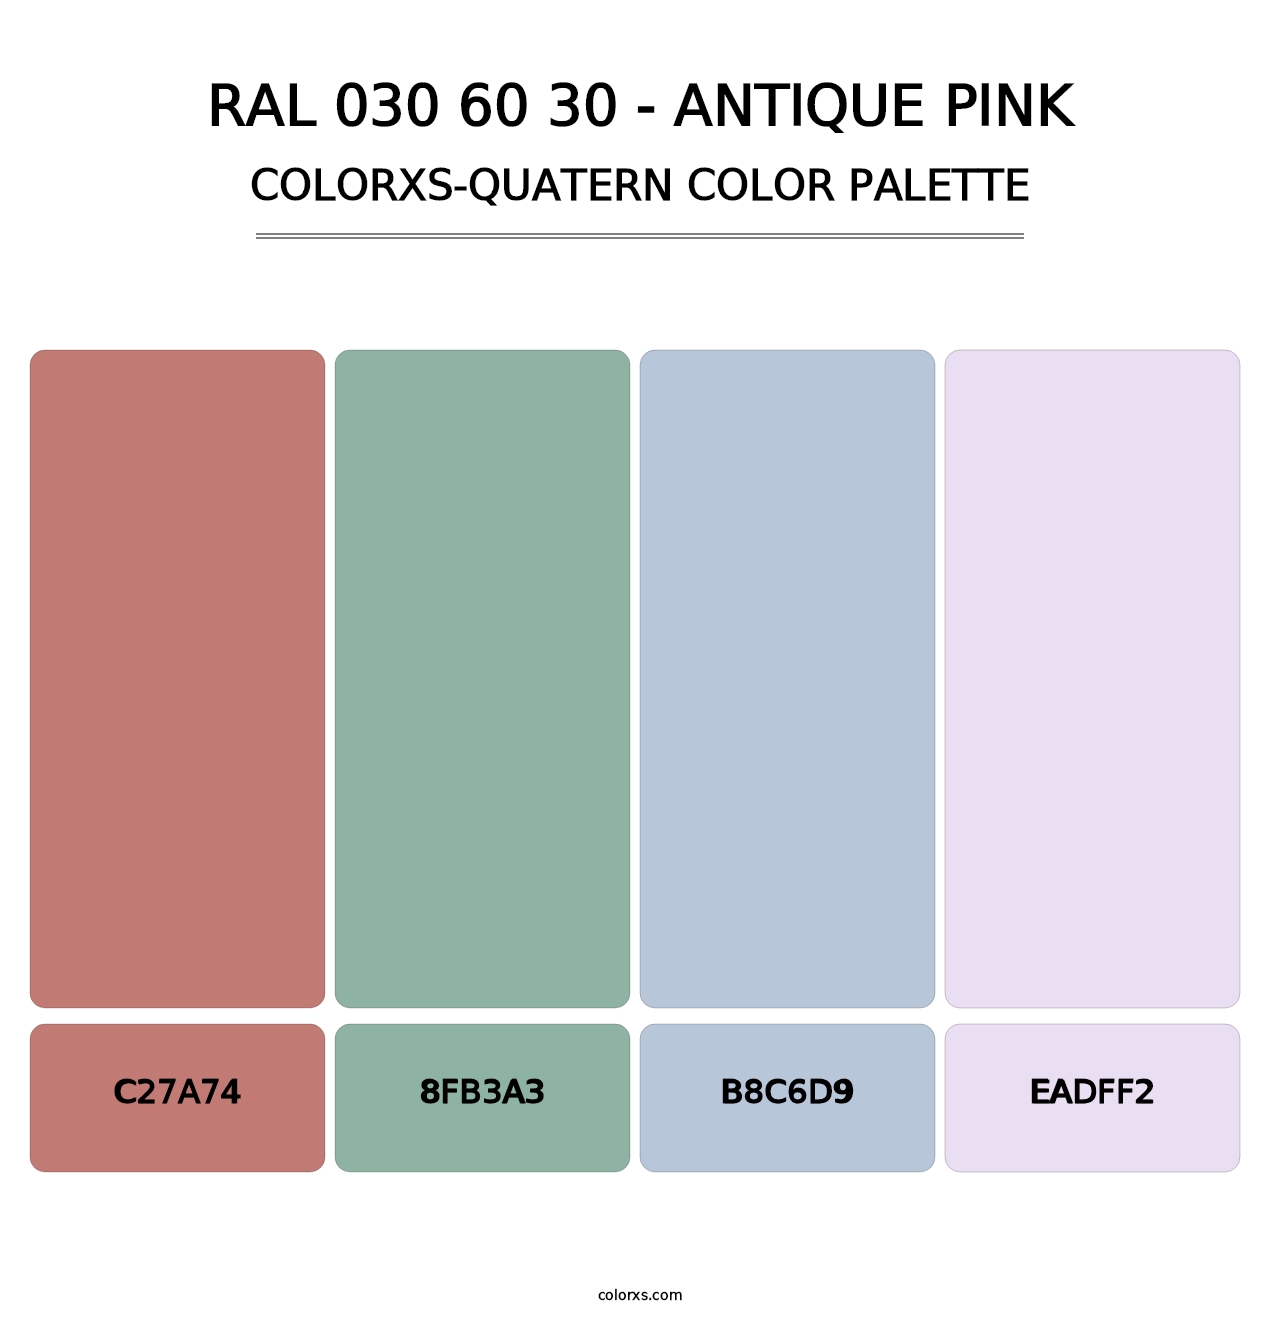 RAL 030 60 30 - Antique Pink - Colorxs Quatern Palette